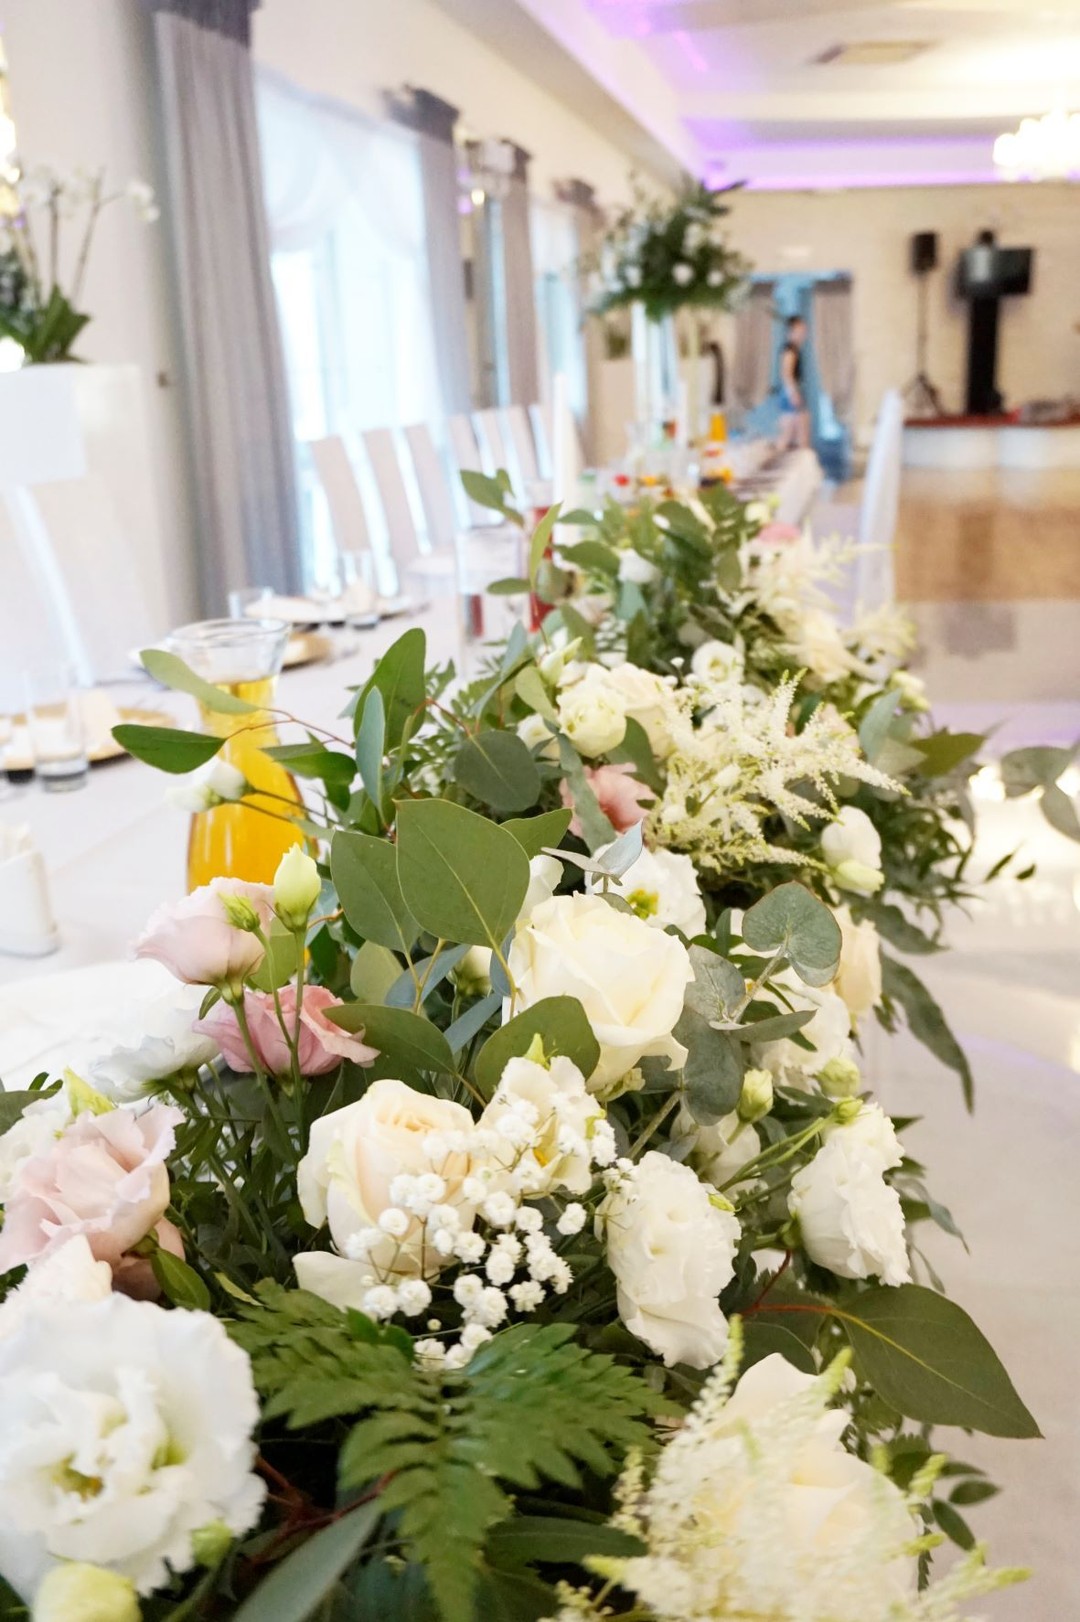 Frontowa dekoracja stołu prezydialnego pełna kwiatów i zieleni